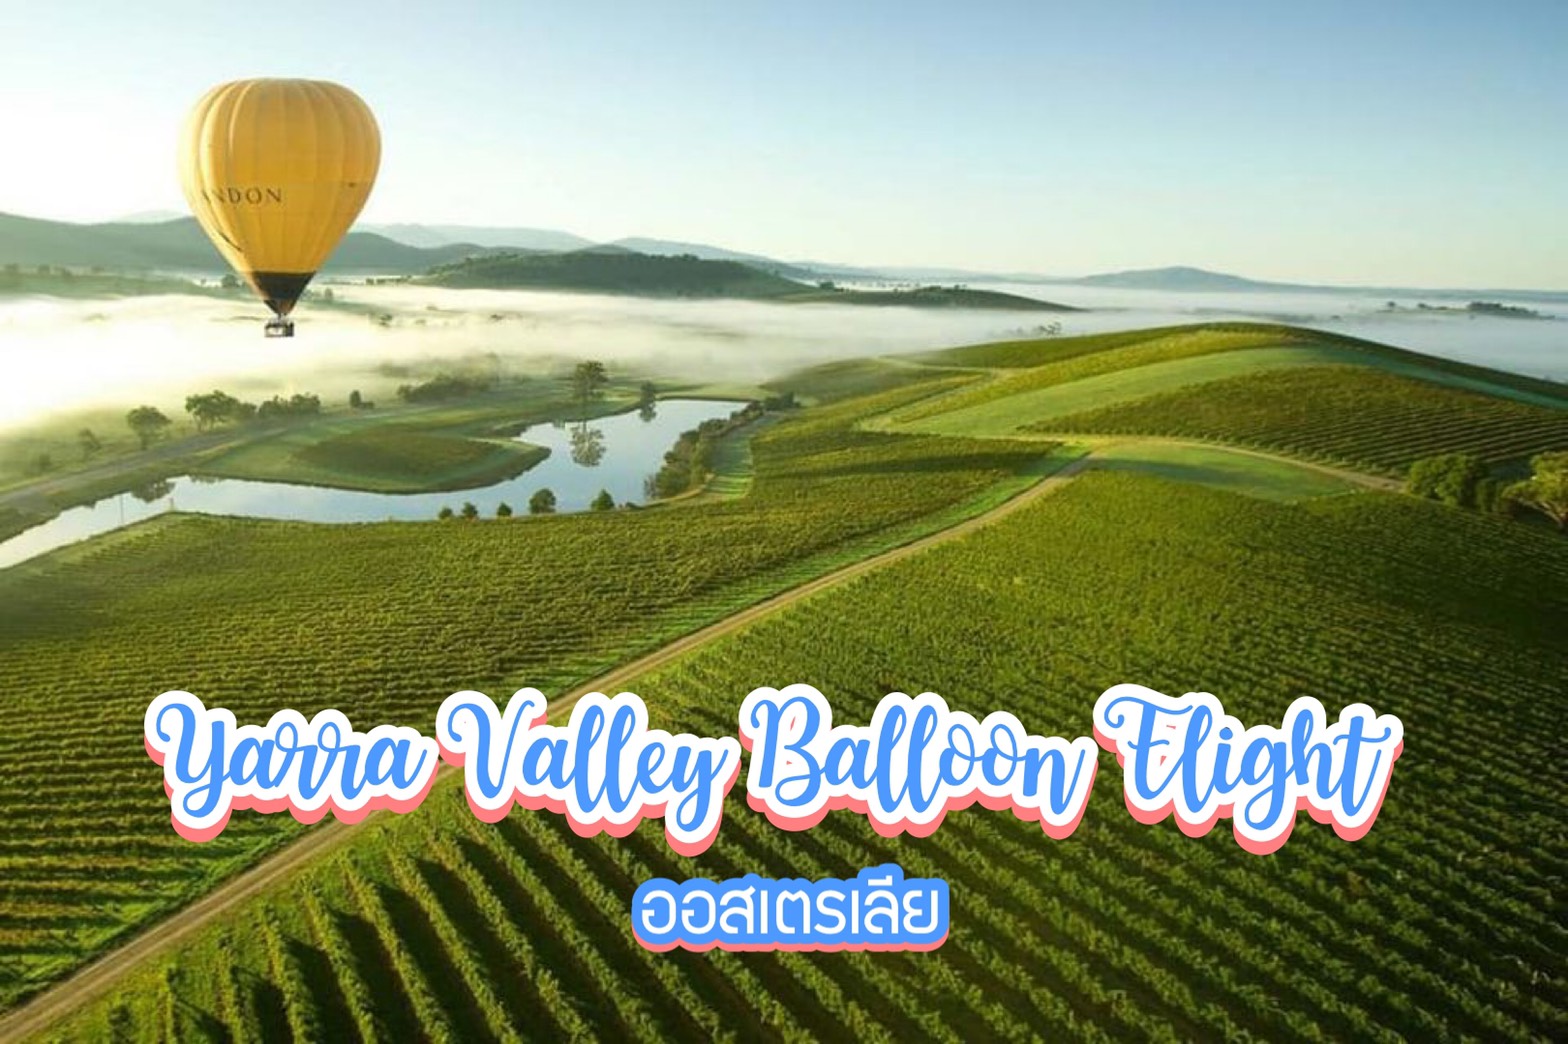 นั่งบอลลูนเหนือไร่ไวน์ Yarra Valley Balloon Flight ออสเตรเลีย